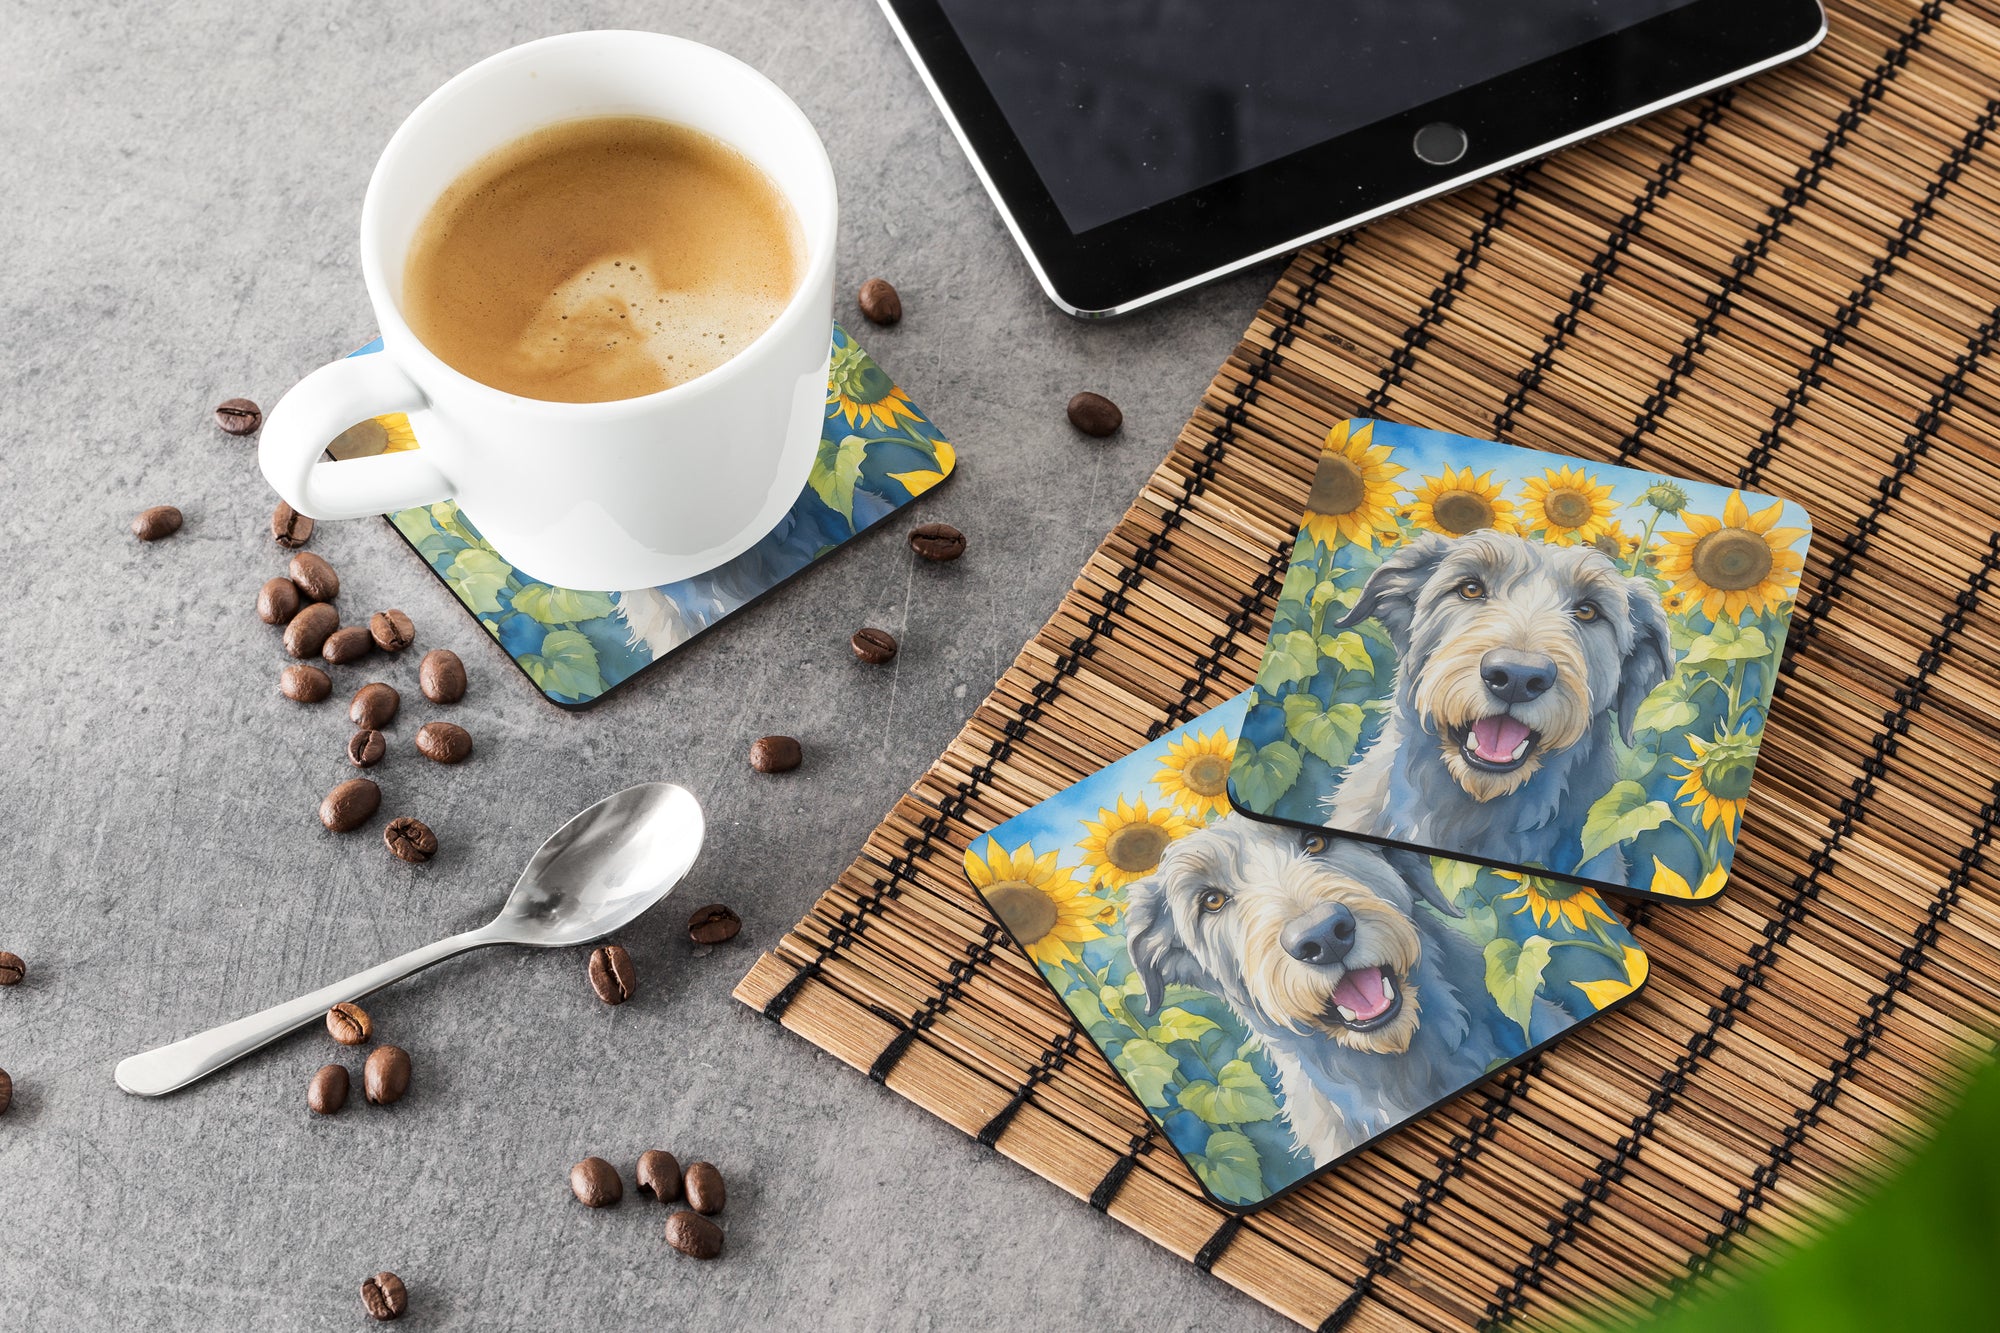 Irish Wolfhound in Sunflowers Foam Coasters